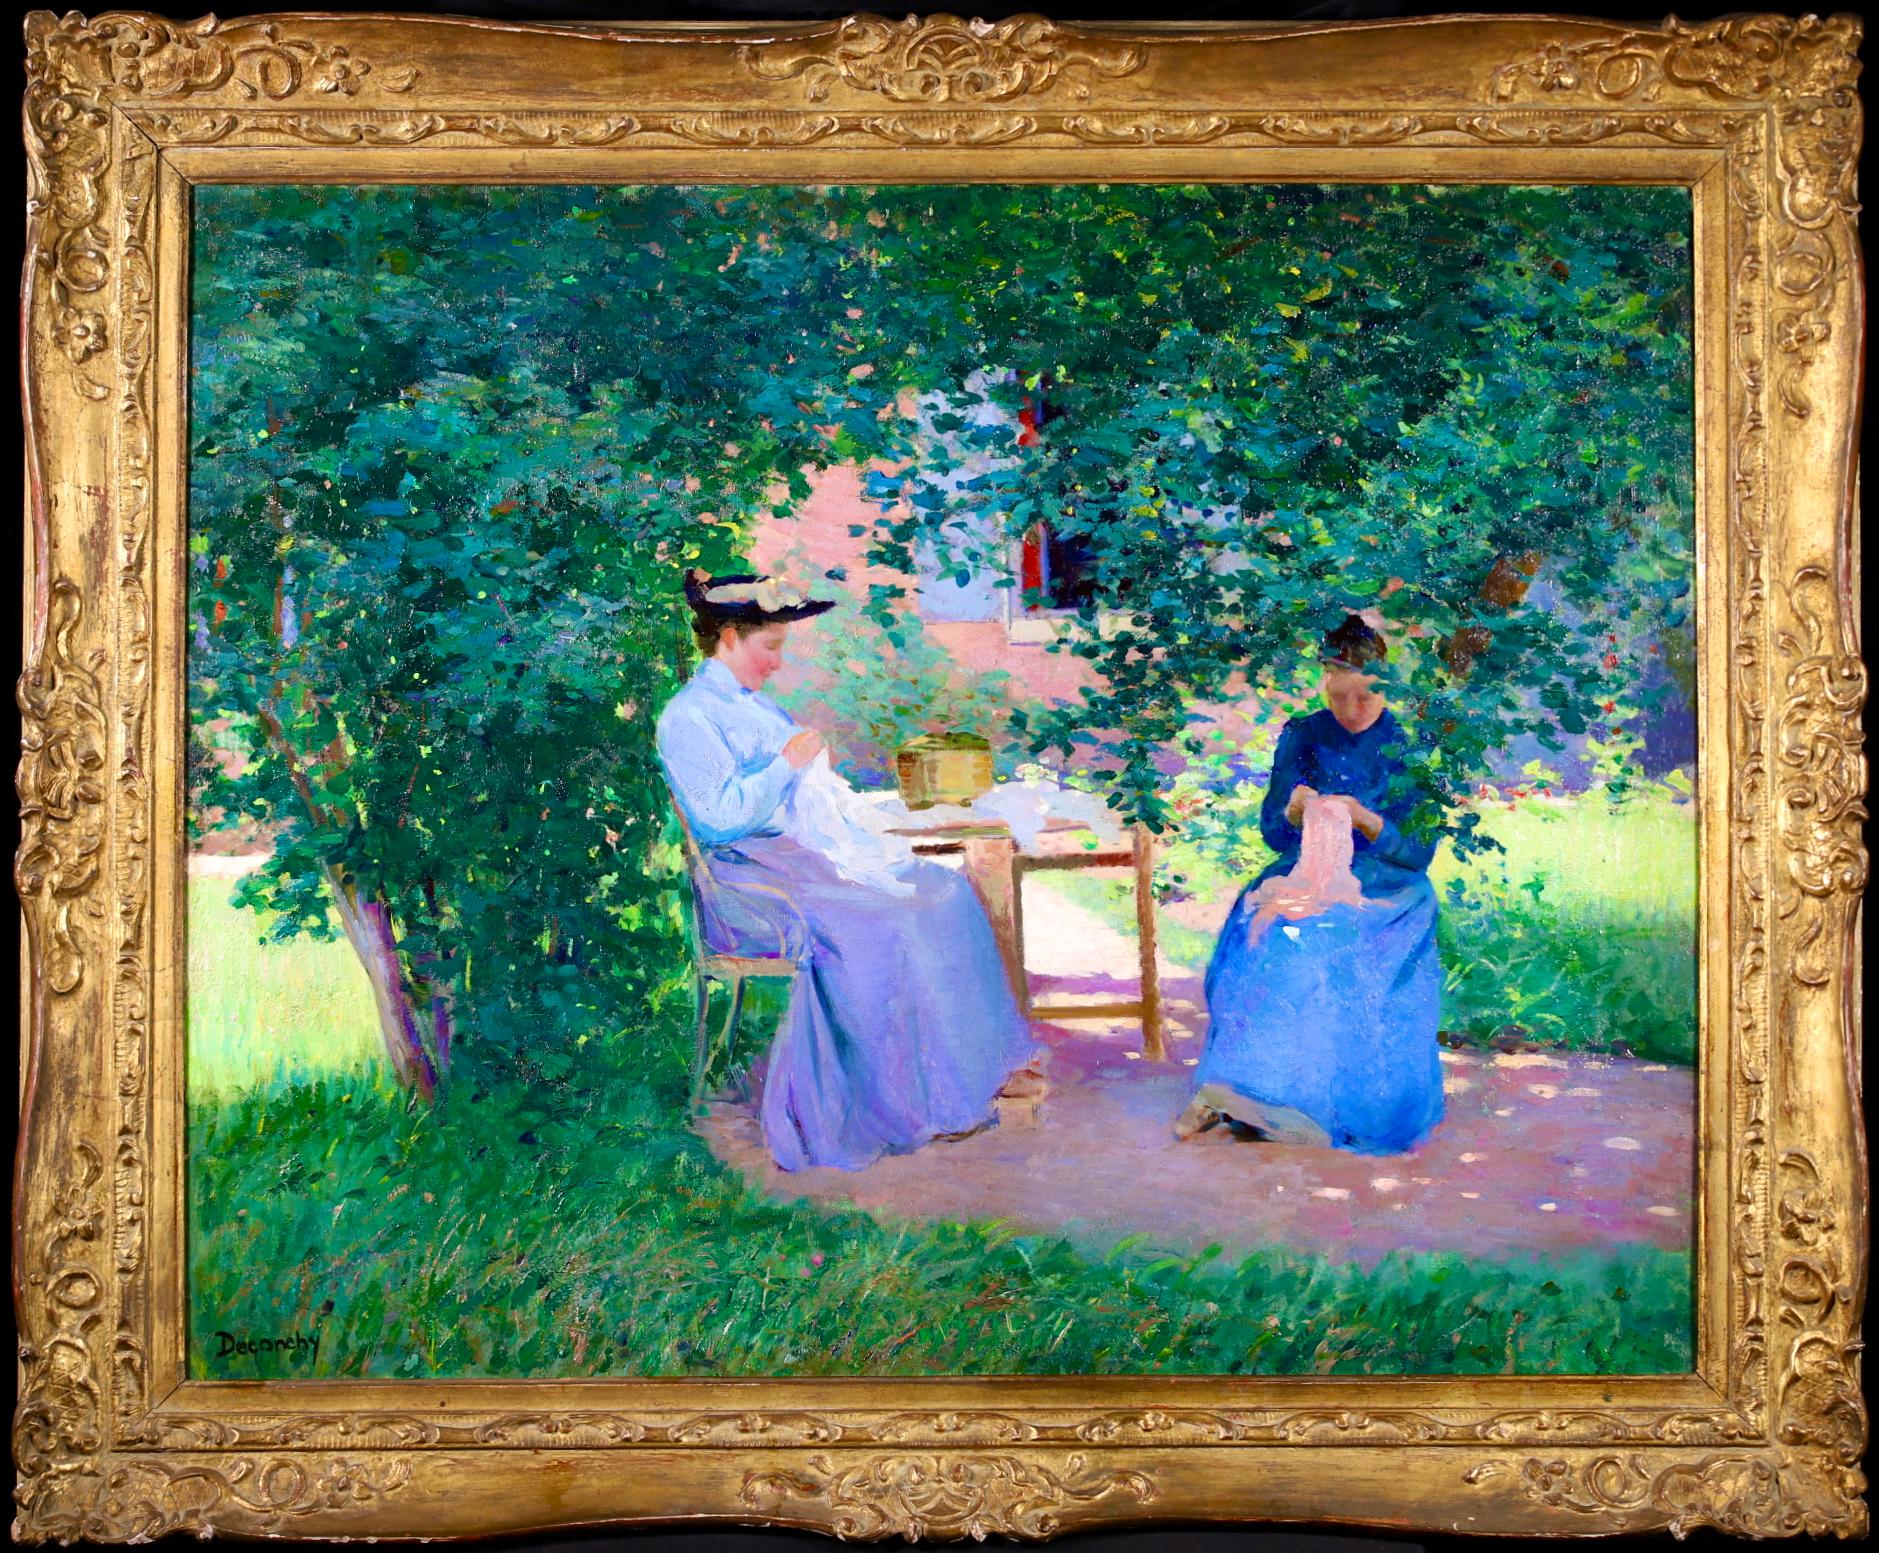 Eine erstaunliche große Öl auf Leinwand um 1900 von Französisch Maler Ferdinand Deconchy. Das Werk zeigt zwei Näherinnen in blauen Blusen und Röcken, die in einem Garten im Schatten von Bäumen sitzen und nähen. Deonchy war sowohl mit Monet als auch